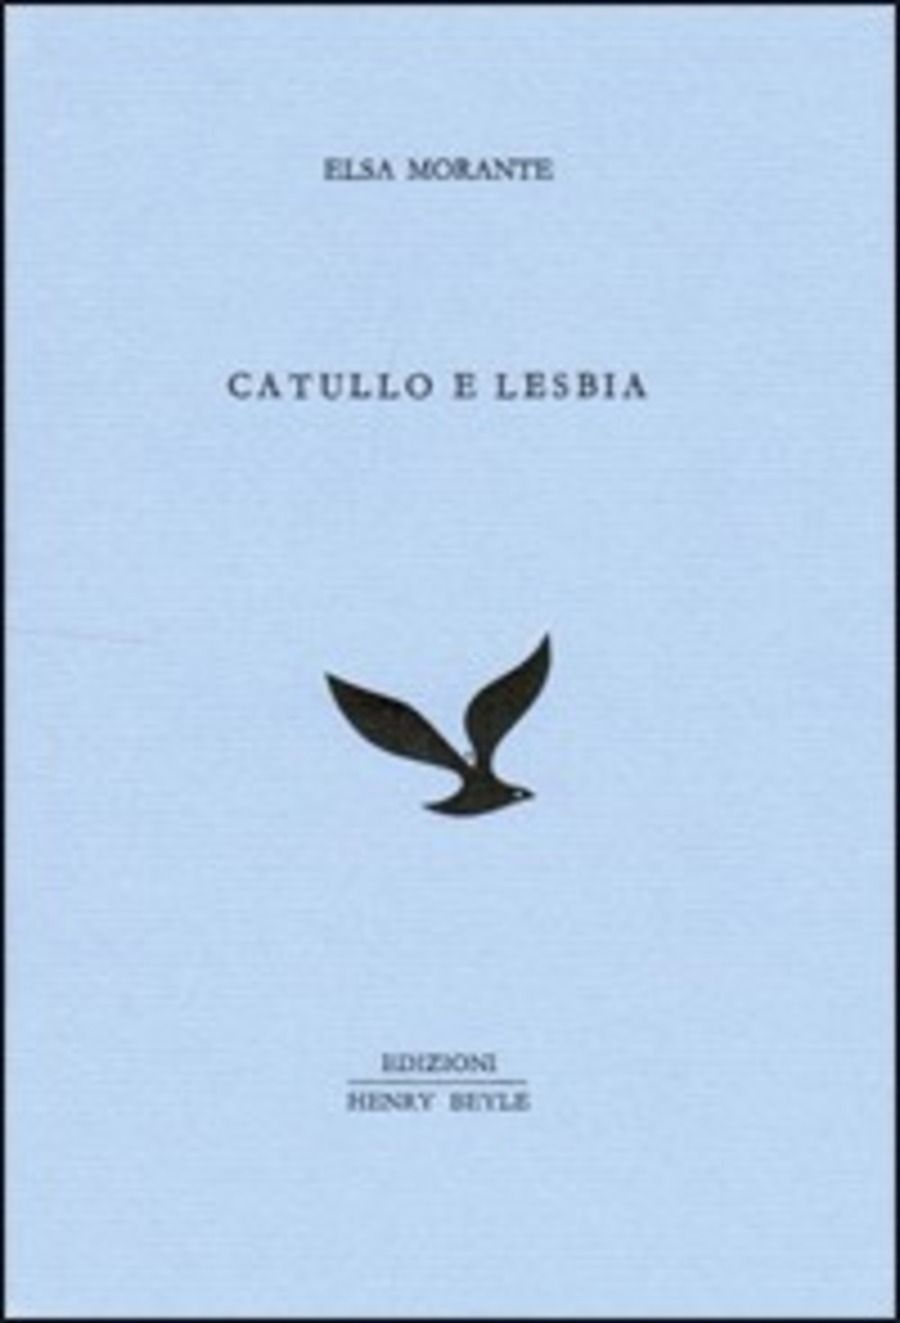 Catullo e Lesbia